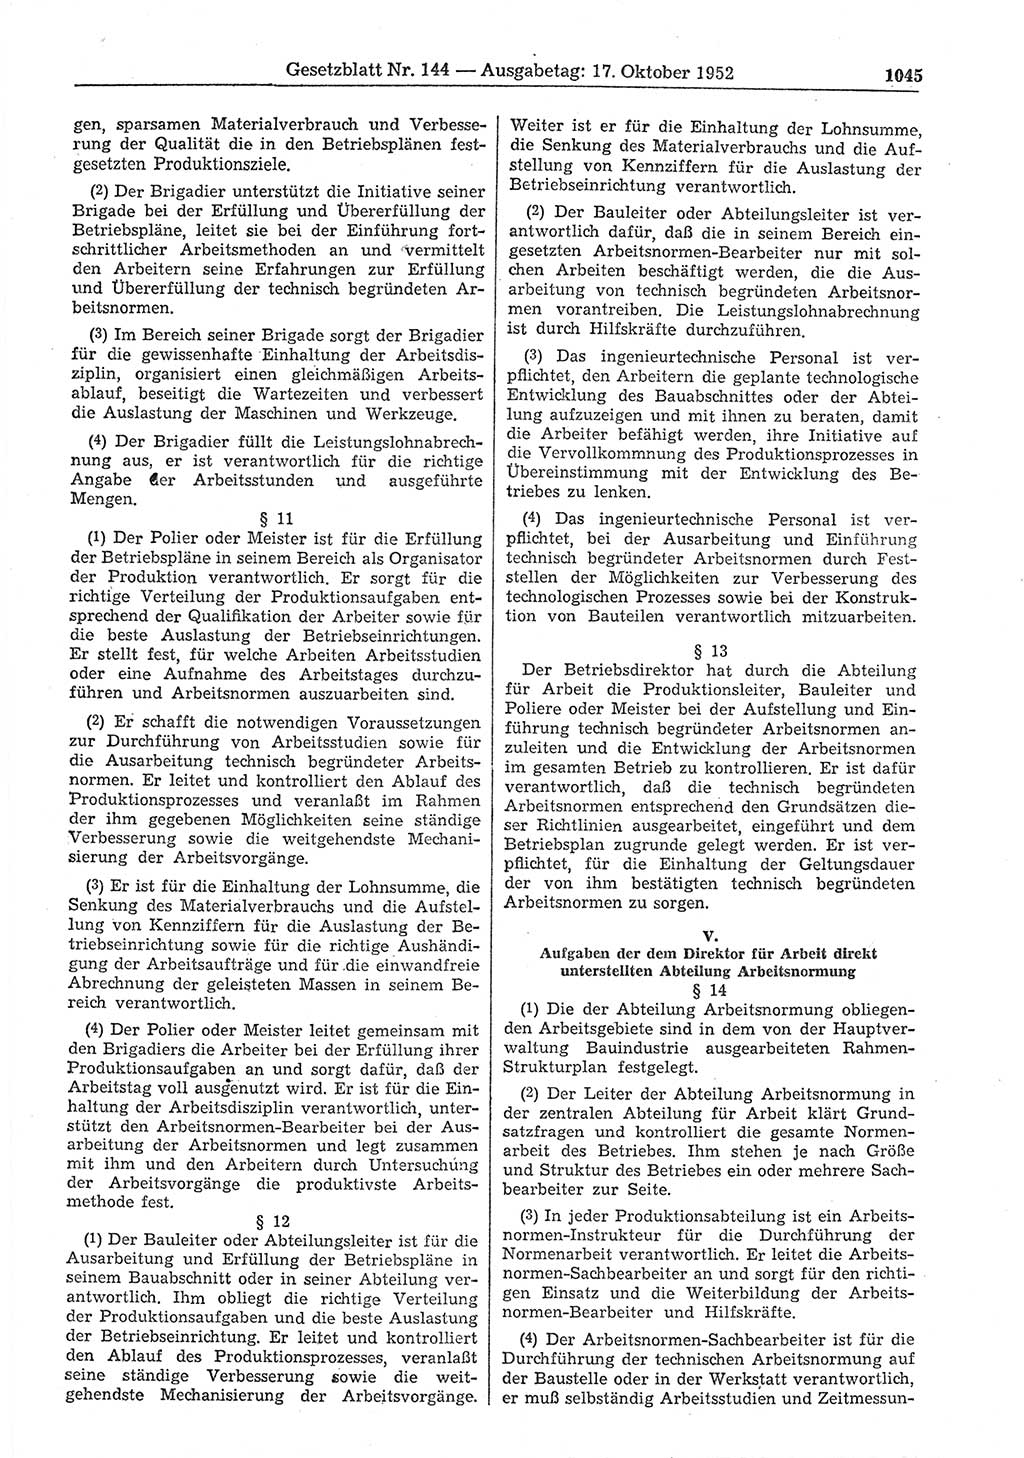 Gesetzblatt (GBl.) der Deutschen Demokratischen Republik (DDR) 1952, Seite 1045 (GBl. DDR 1952, S. 1045)